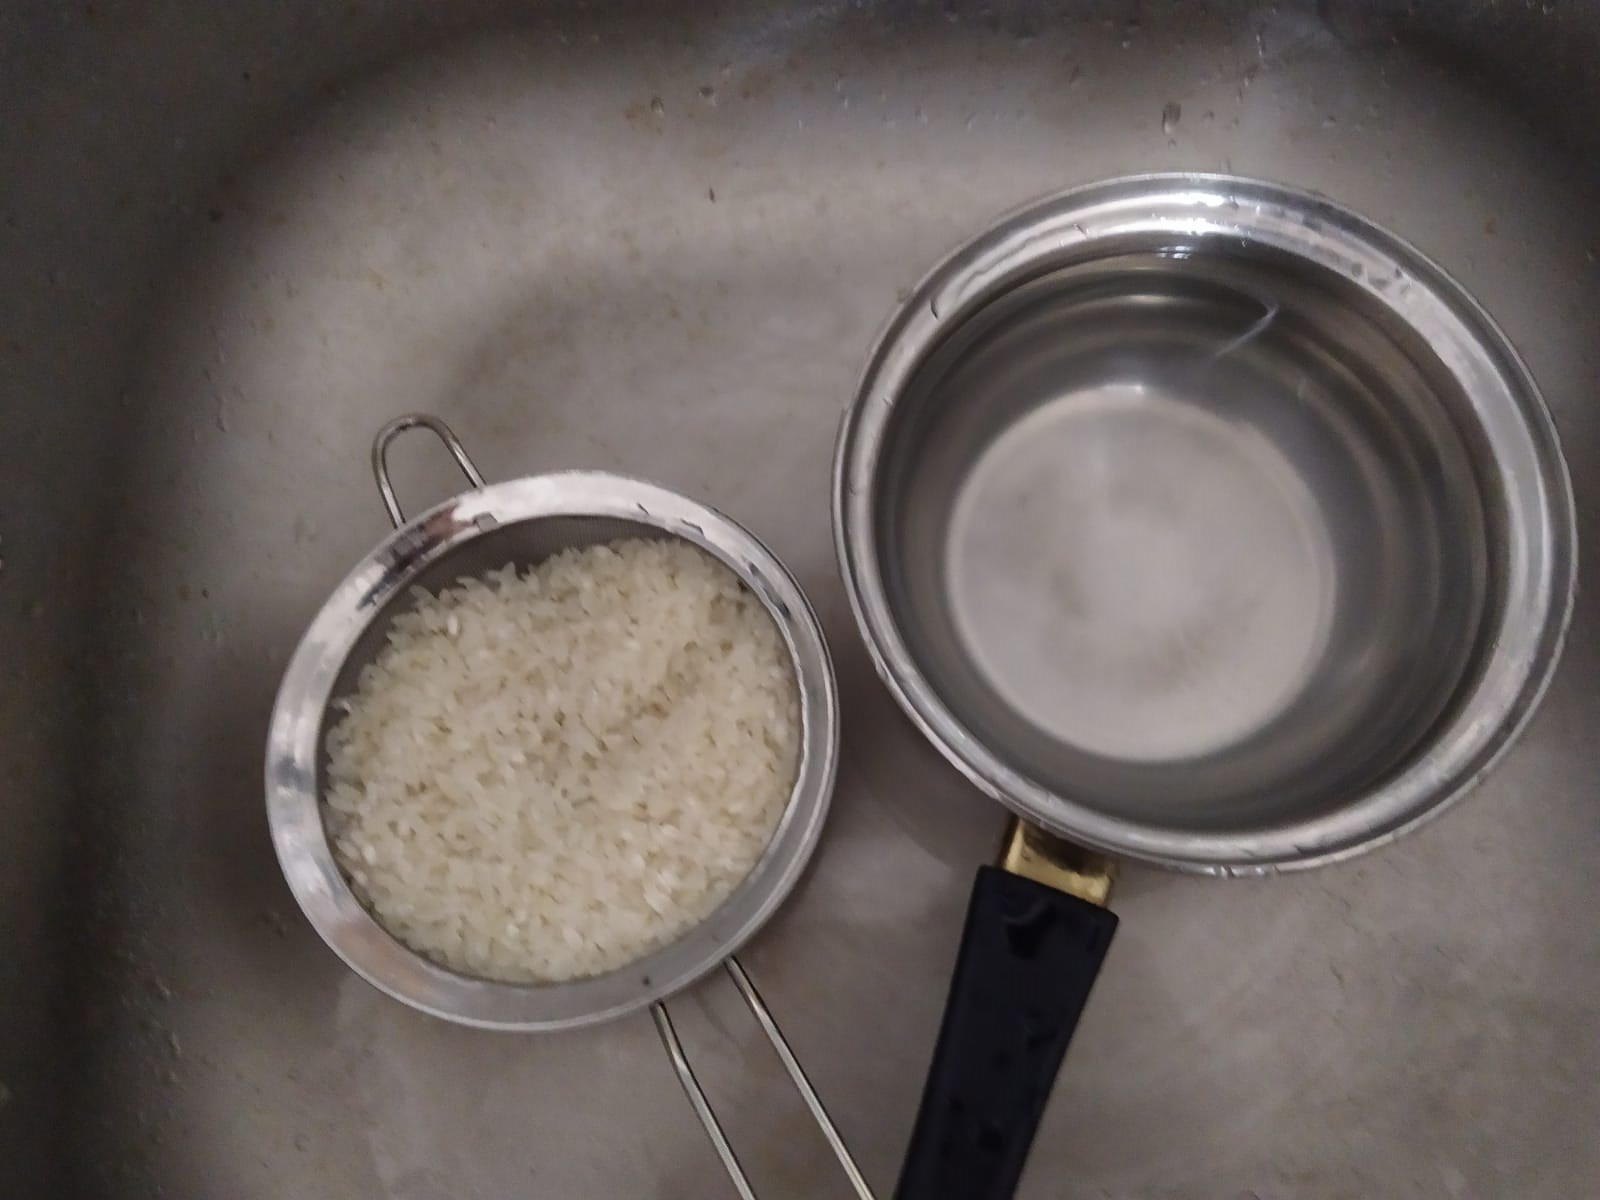  washing rice 